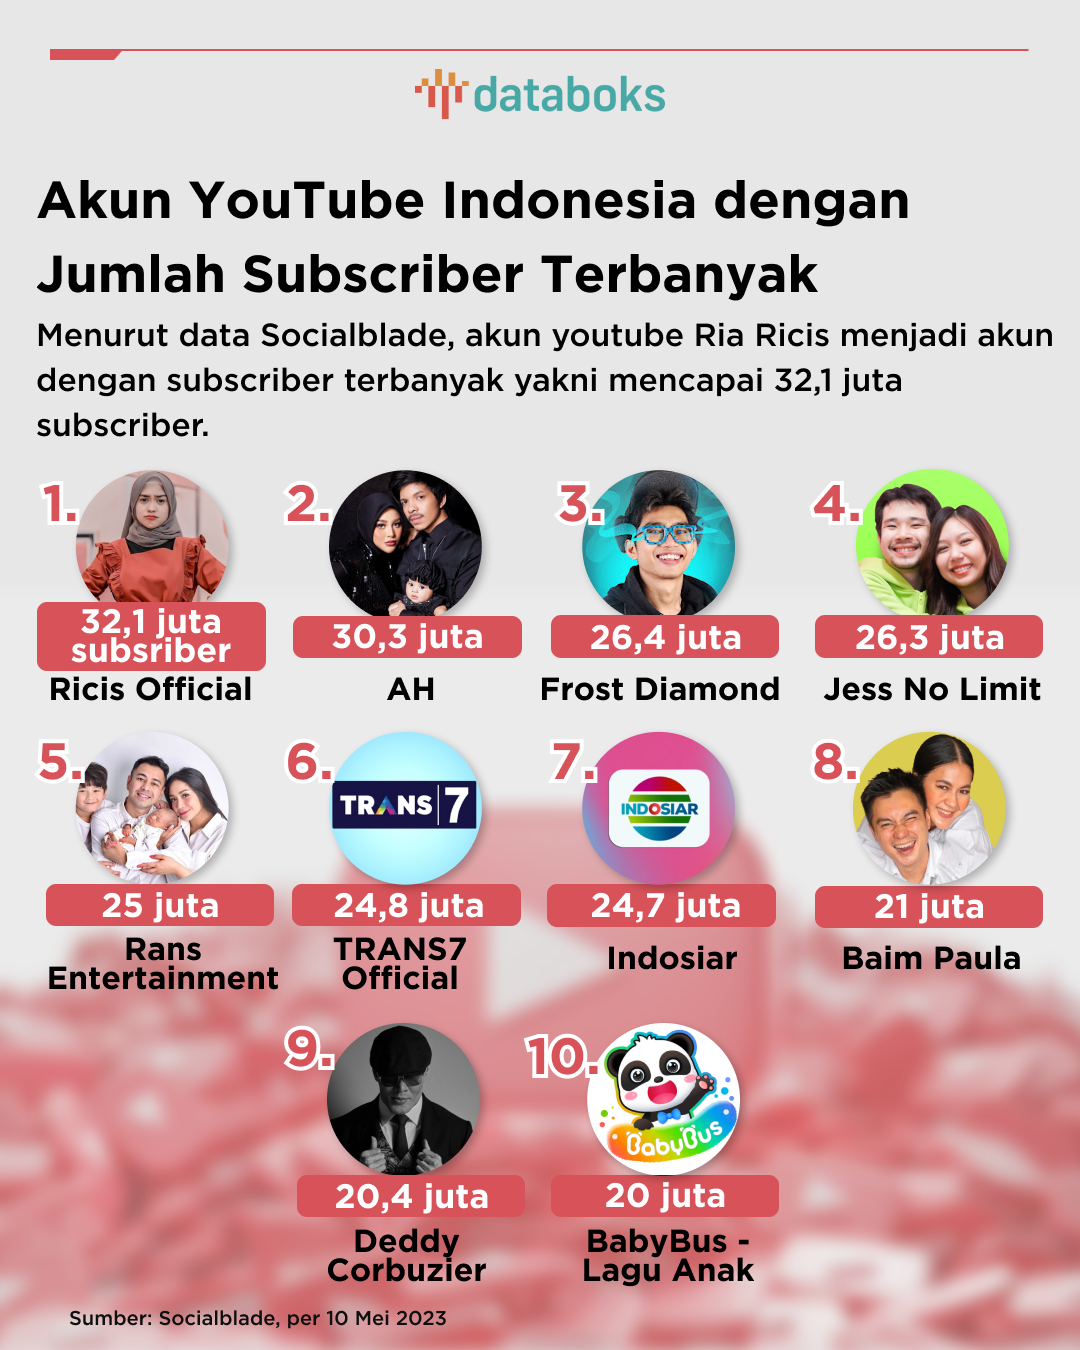 Inilah 10 YouTuber Indonesia dengan Jumlah Subscriber Terbanyak